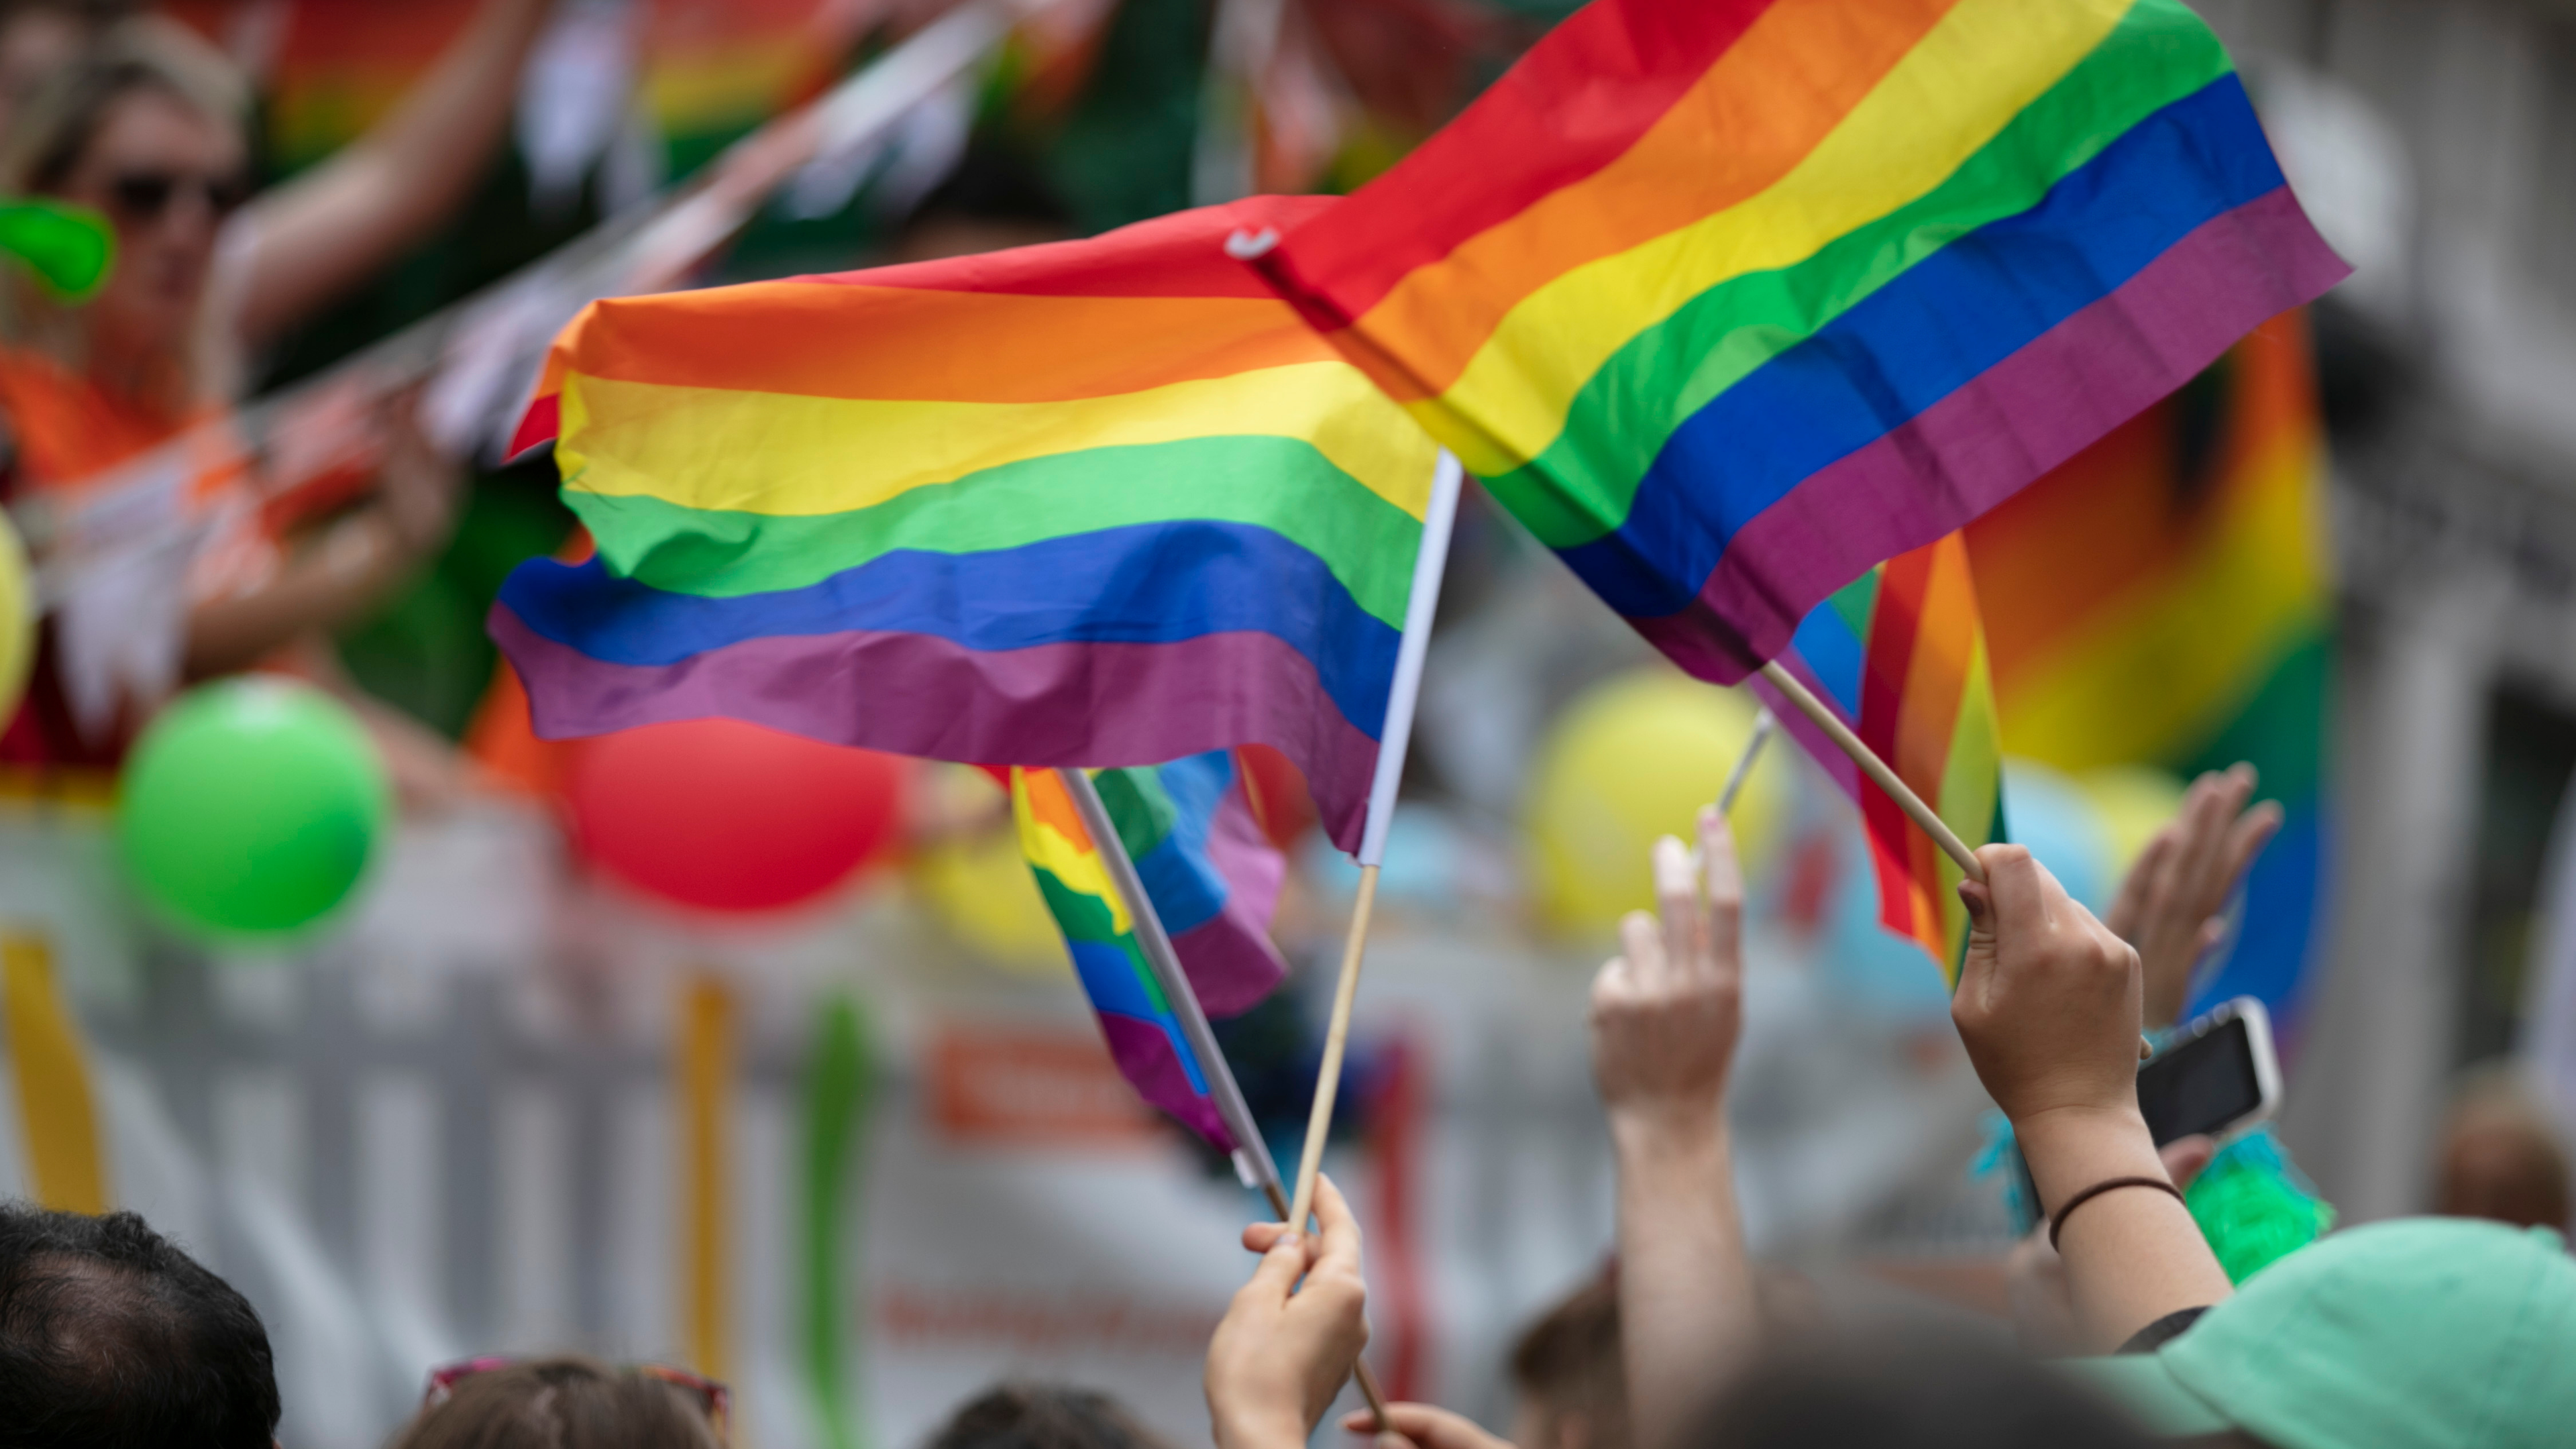 IU Verdes Equo propone conmemorar el Día del Orgullo LGBT+ con actividades culturales dirigidas a la población en general